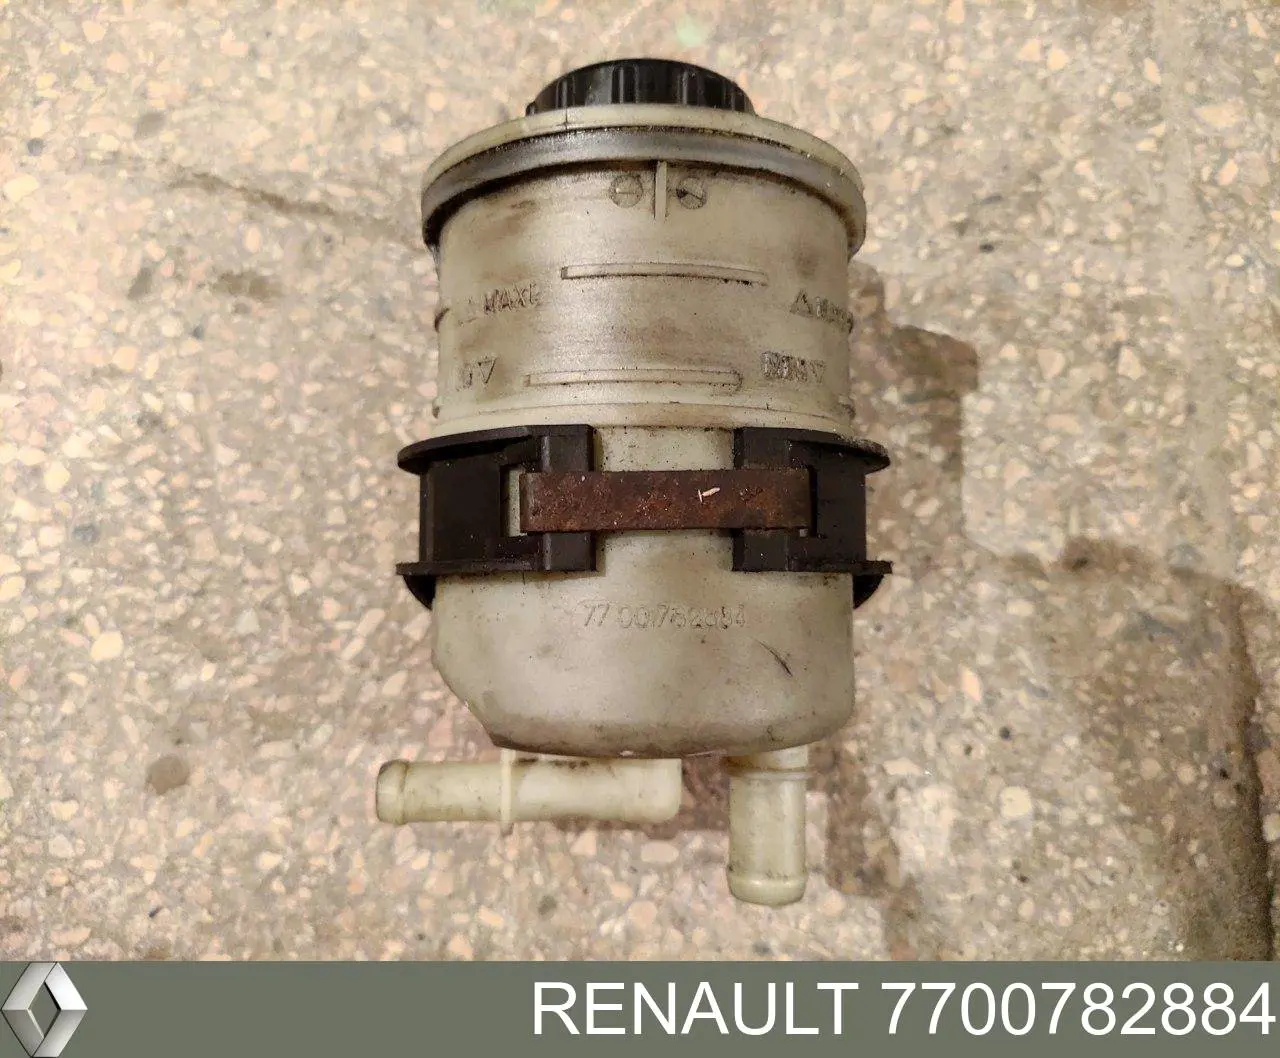 7700782884 Renault (RVI) tanque de bomba da direção hidrâulica assistida